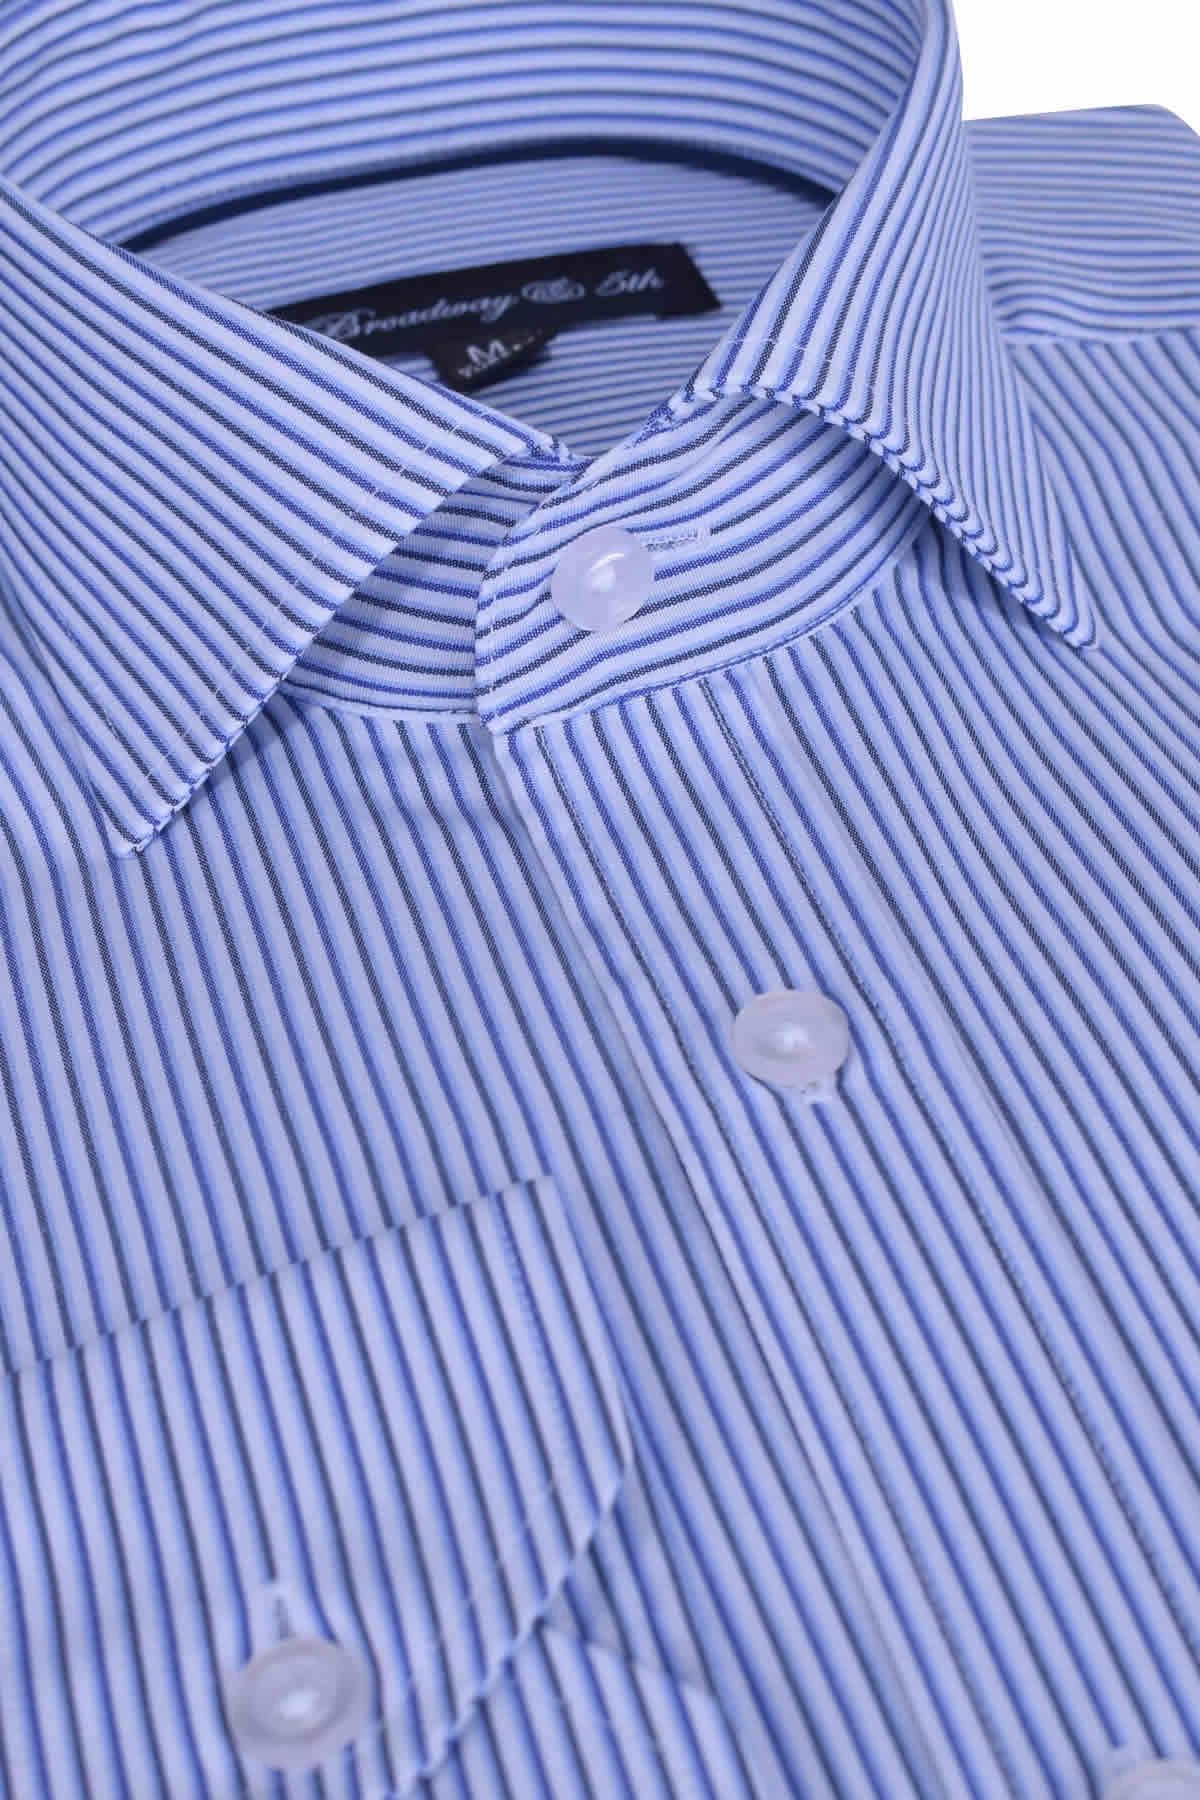 Ottomoda Erkek Çizgili Uzun Kollu Italyan Yaka Gömlek, B5-017